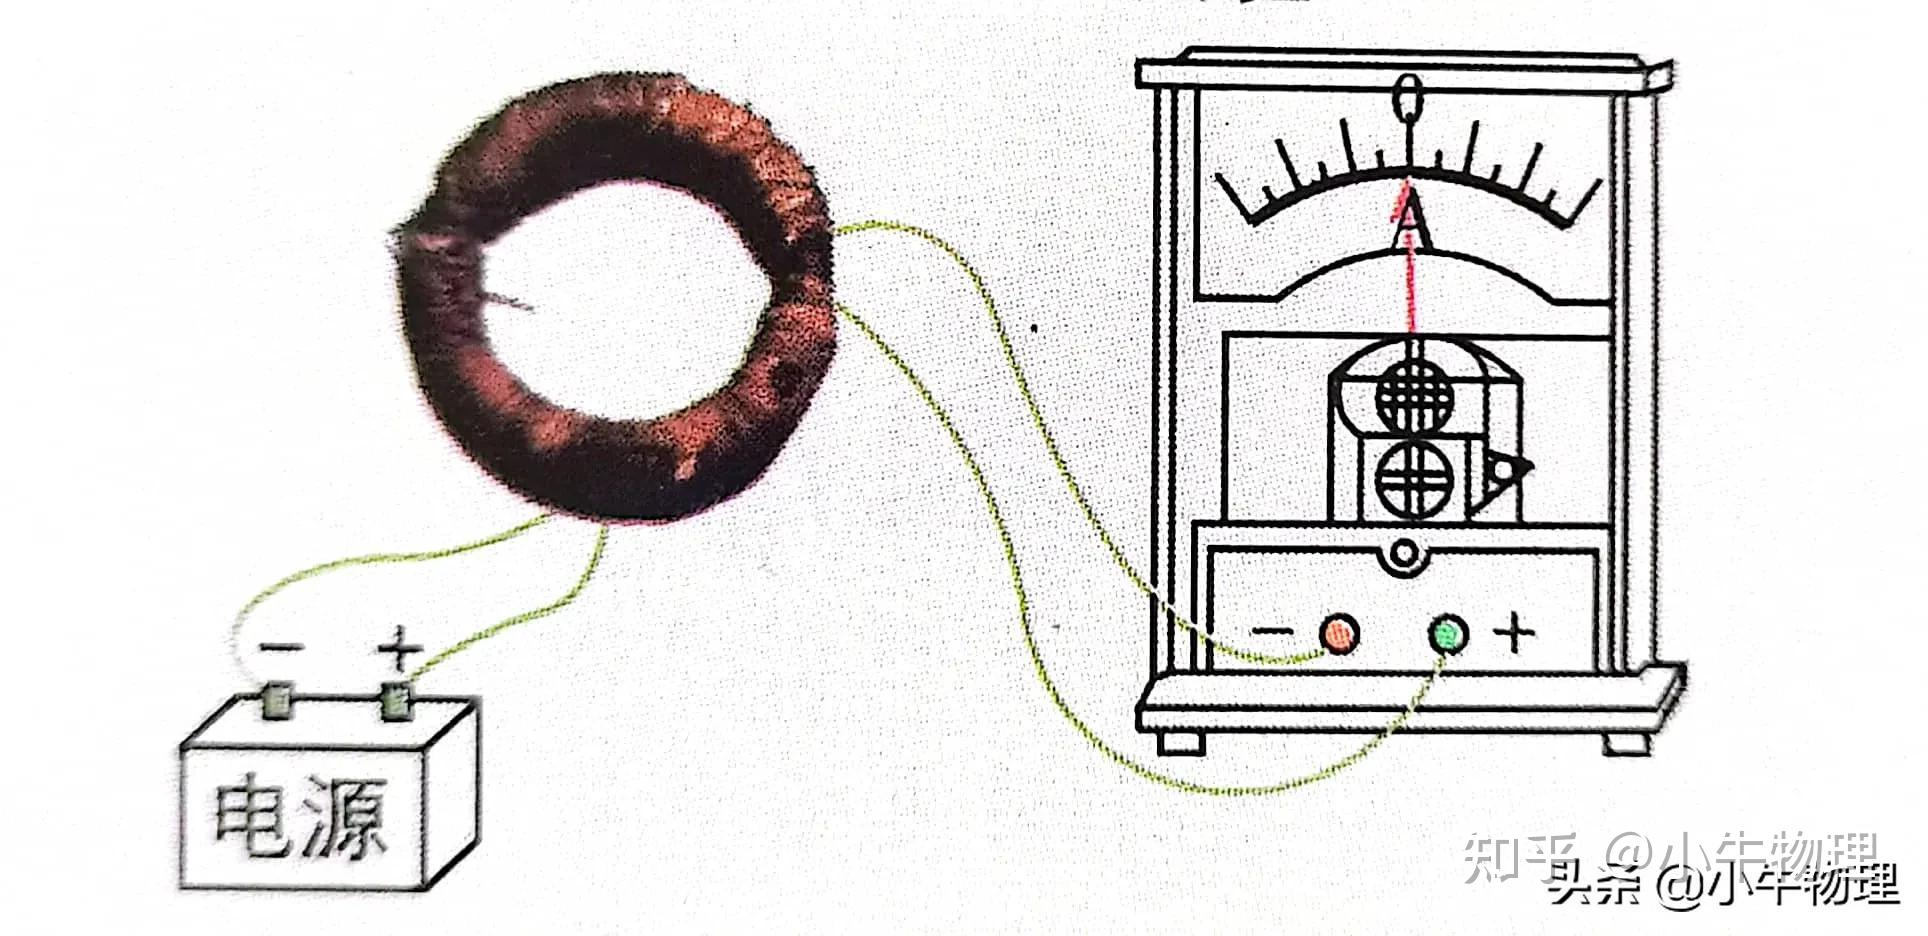 多次失败后,法拉第终于发现了磁生电现象:把两个线圈绕在同一个铁环